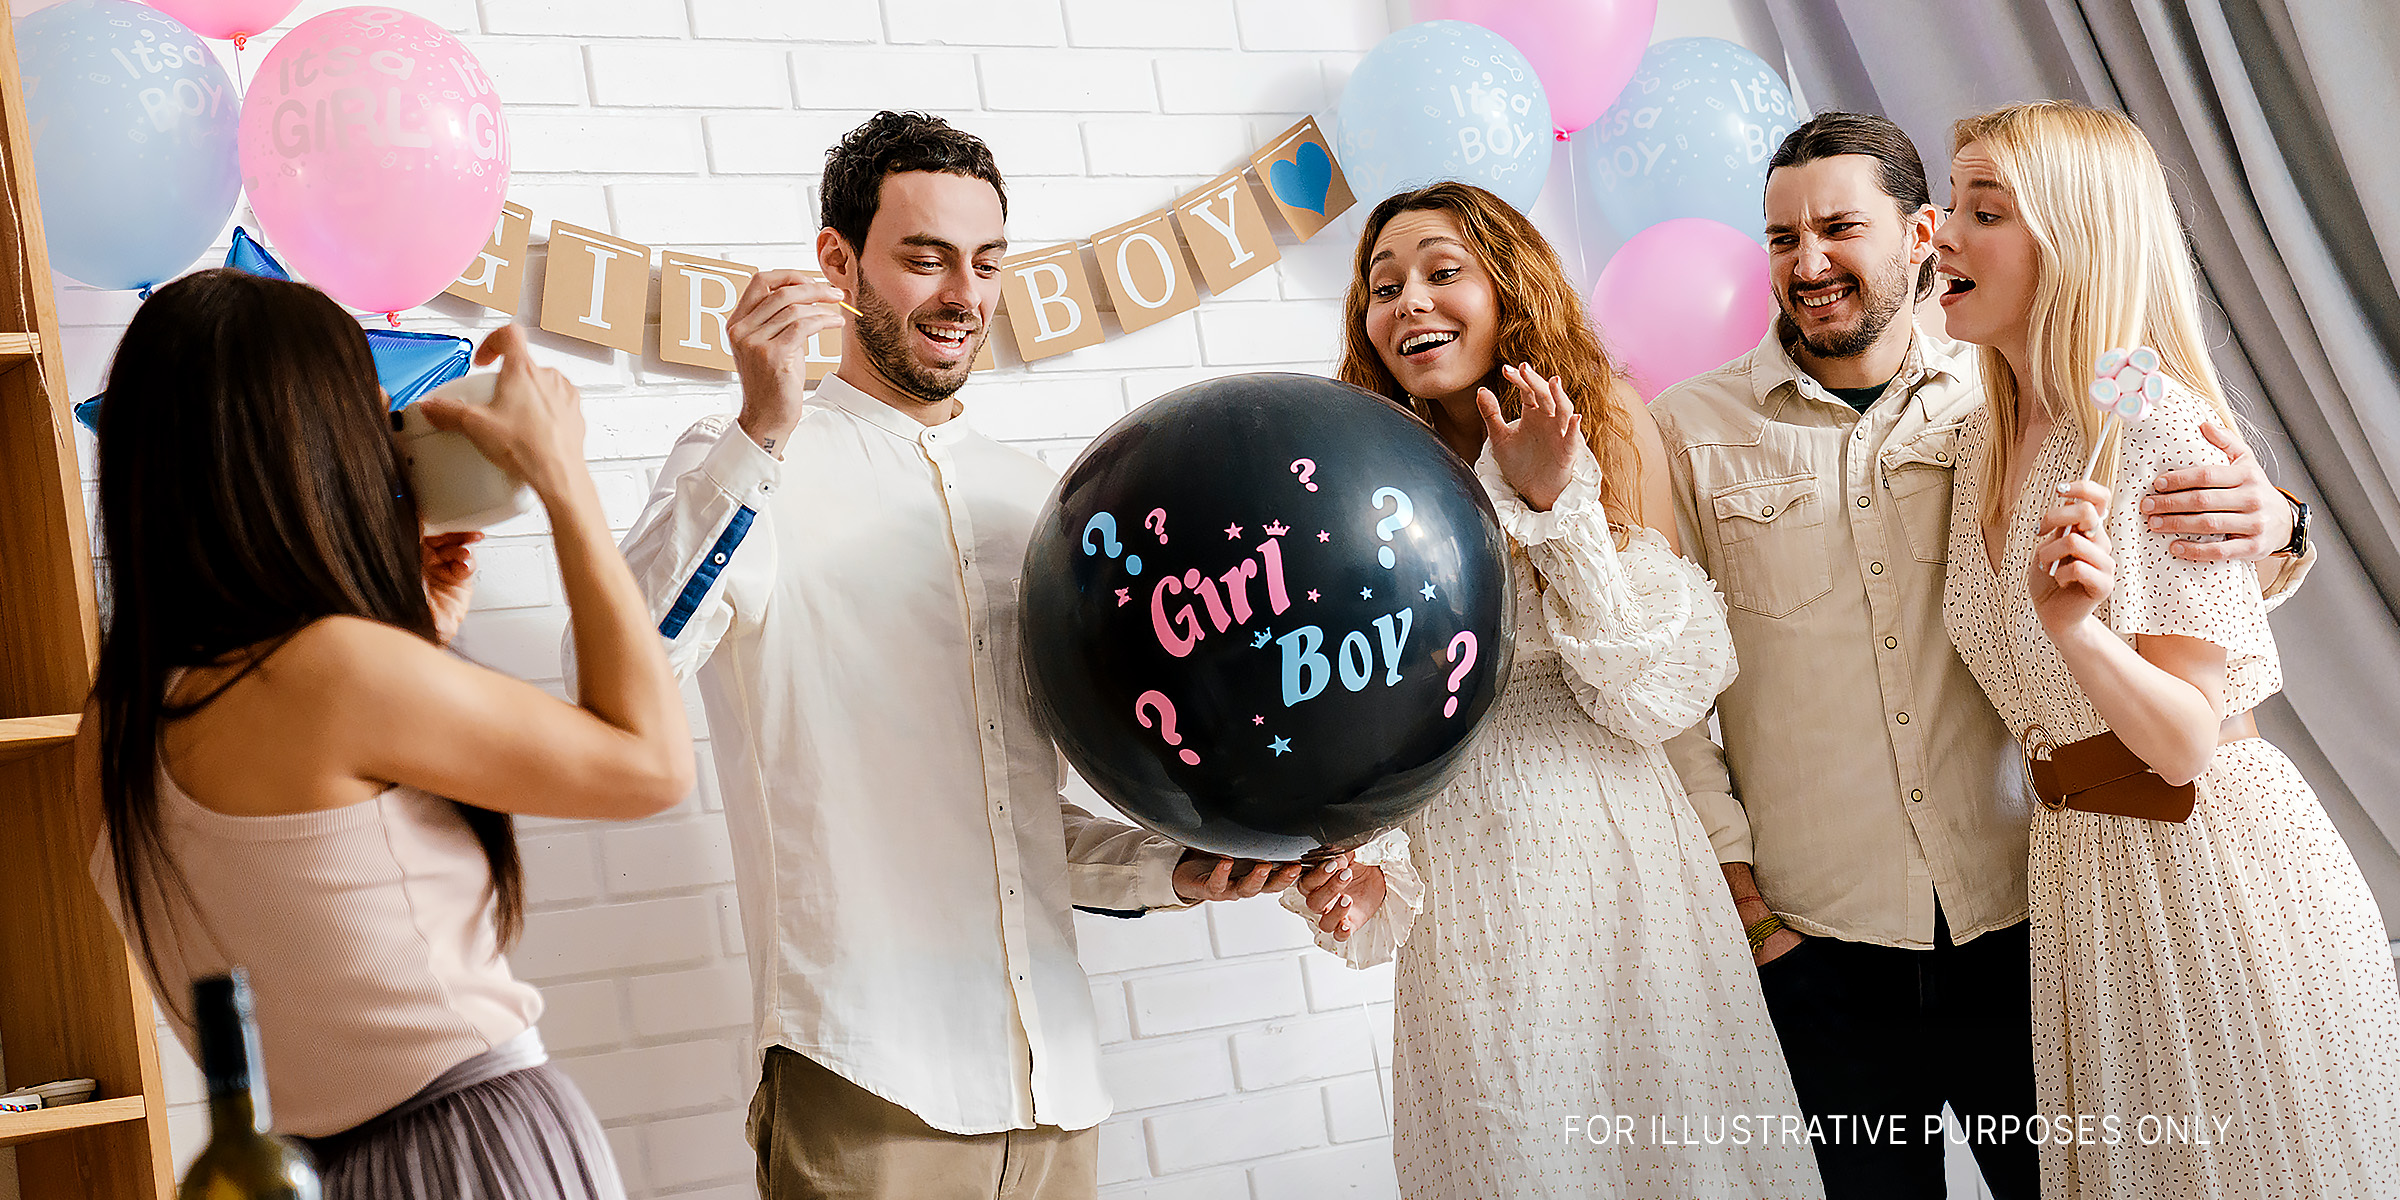 Gäste auf einer Gender Reveal Party | Quelle: Shutterstock